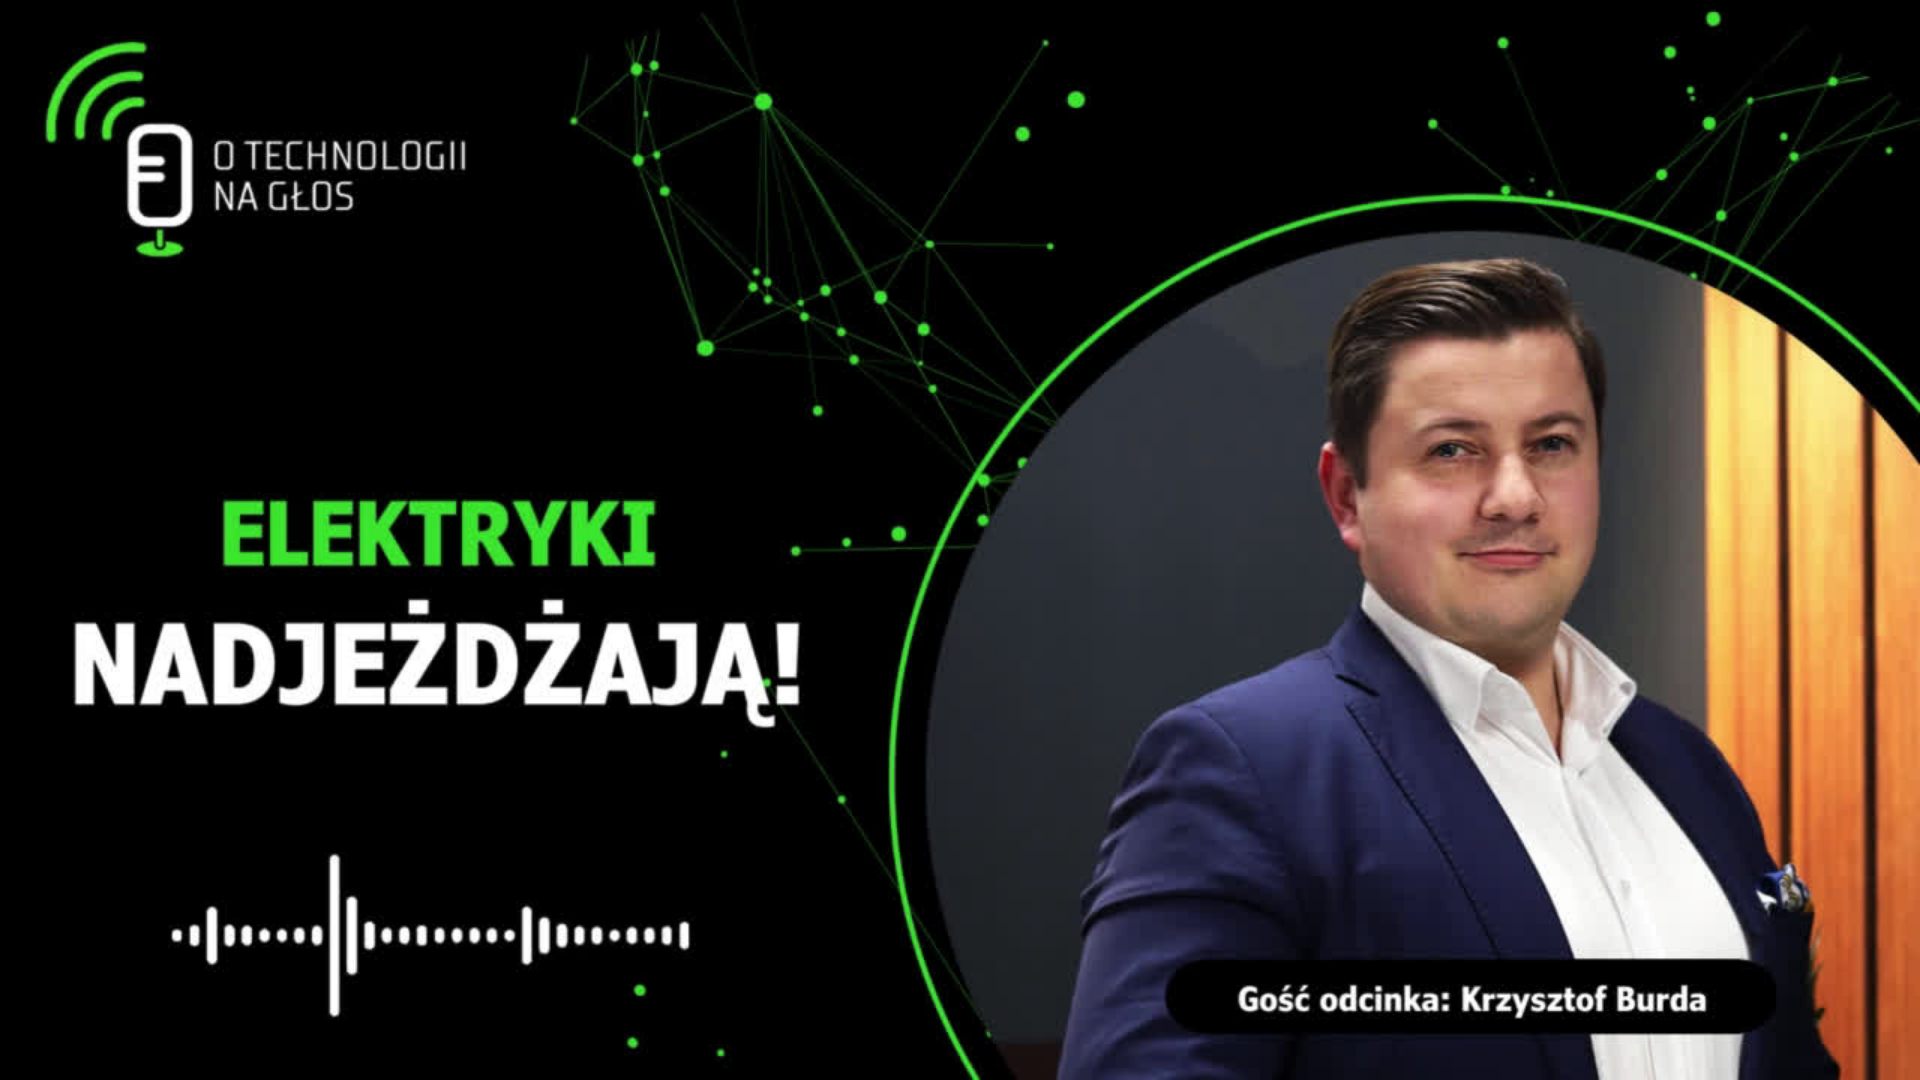 Krzysztof Burda, gość podcastu "O technologii na głos"